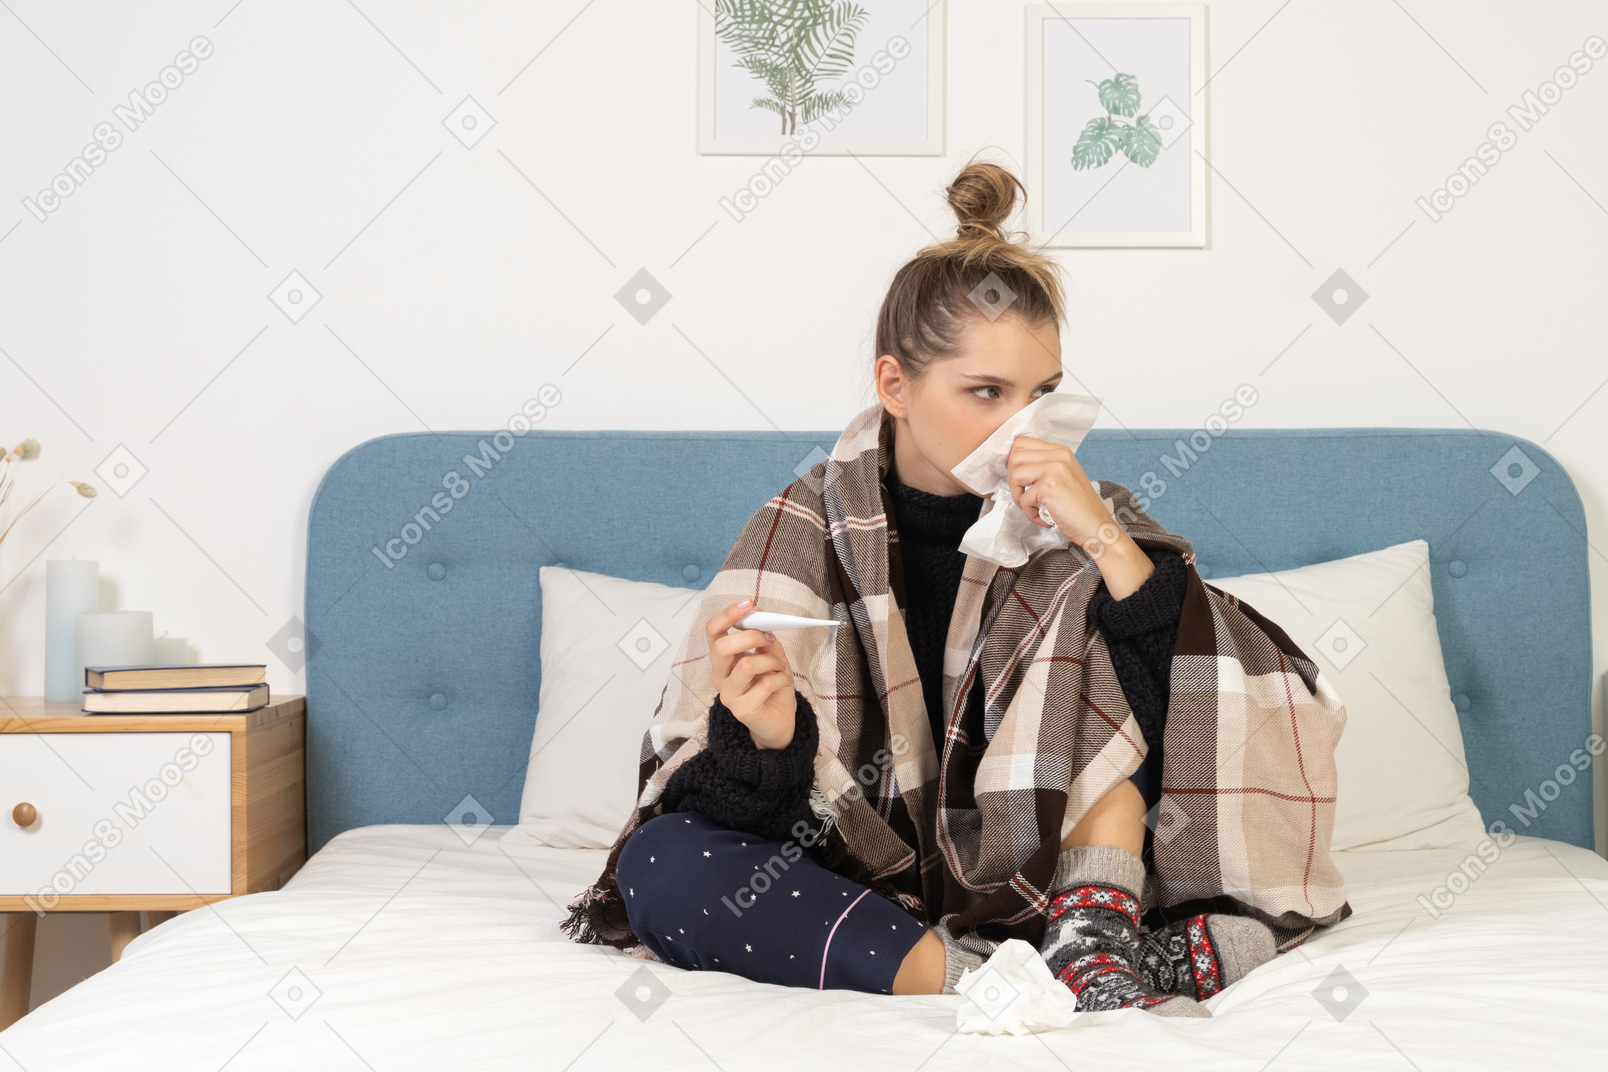 Vista frontal de una joven enferma en pijama envuelto en una manta de cuadros sonándose la nariz